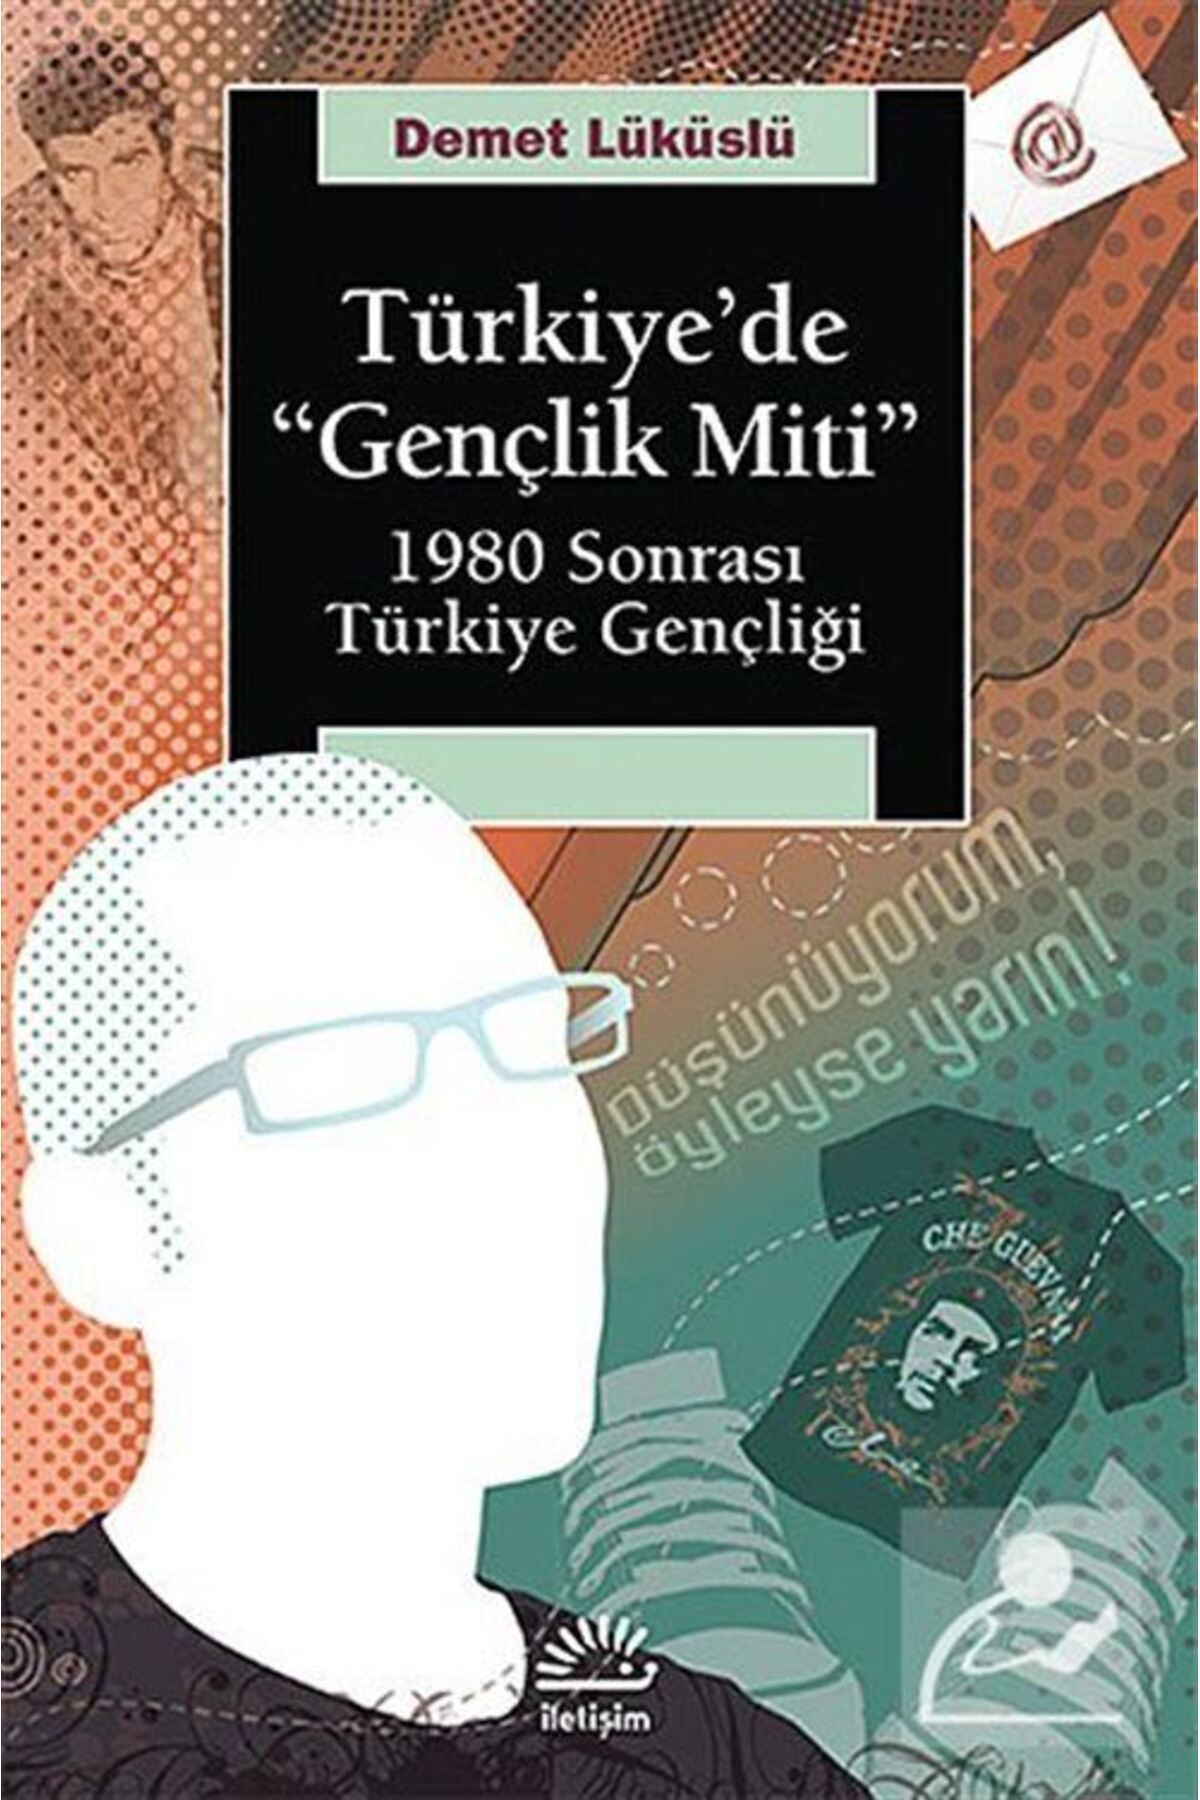 İletişim Yayınları Türkiye'de Gençlik Miti & 1980 Sonrası Türkiye Gençliği